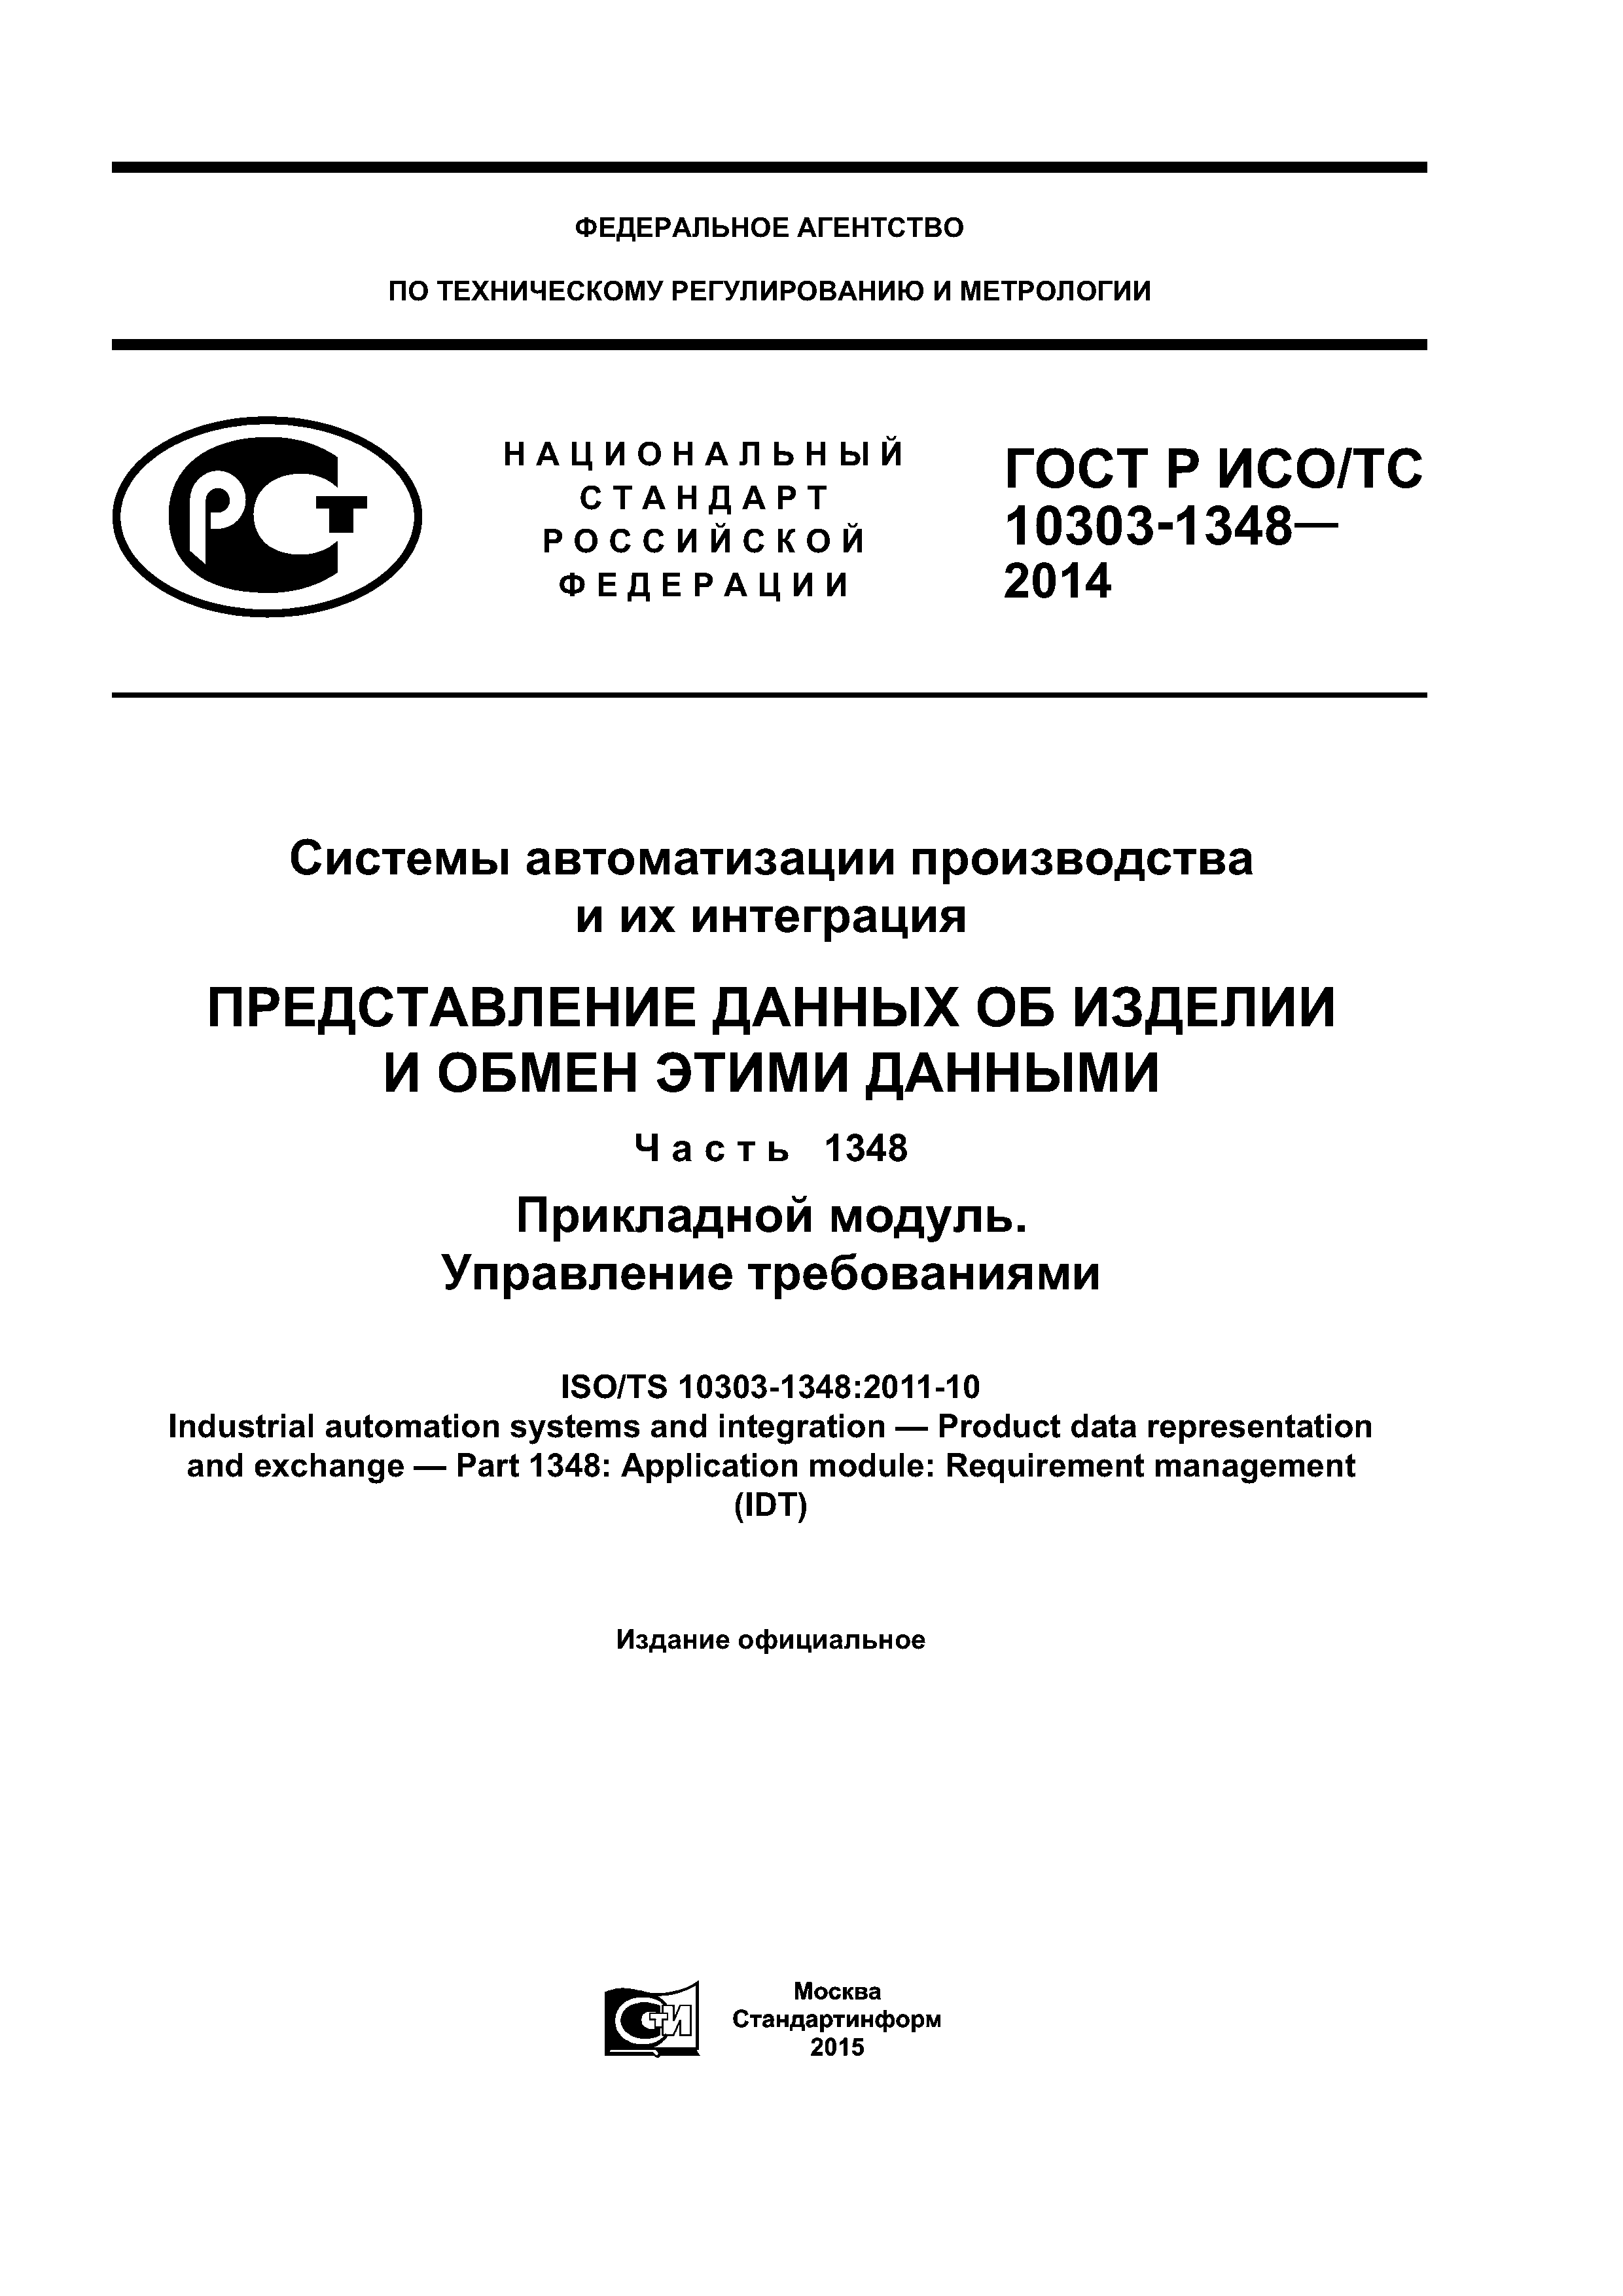 ГОСТ Р ИСО/ТС 10303-1348-2014